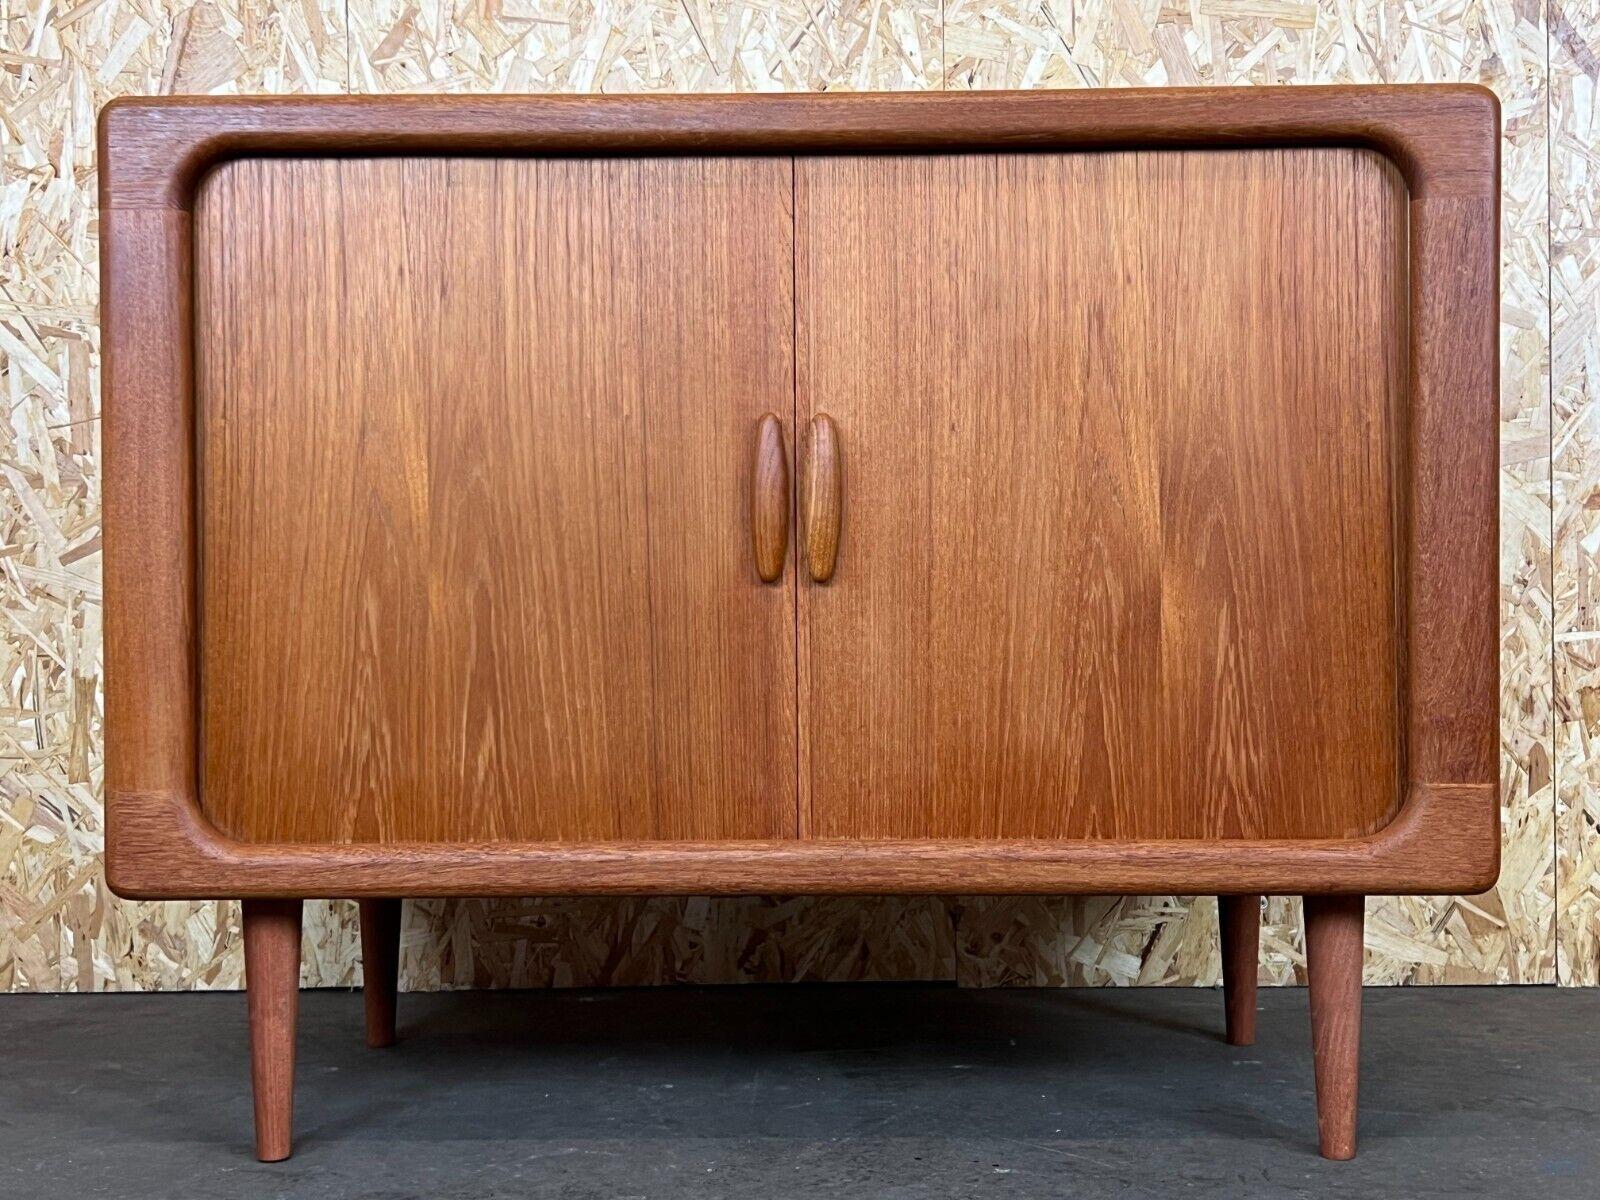 1960s-1970s Teak Dyrlund Sideboard Credenza Cabinet Danish Modern Design 16